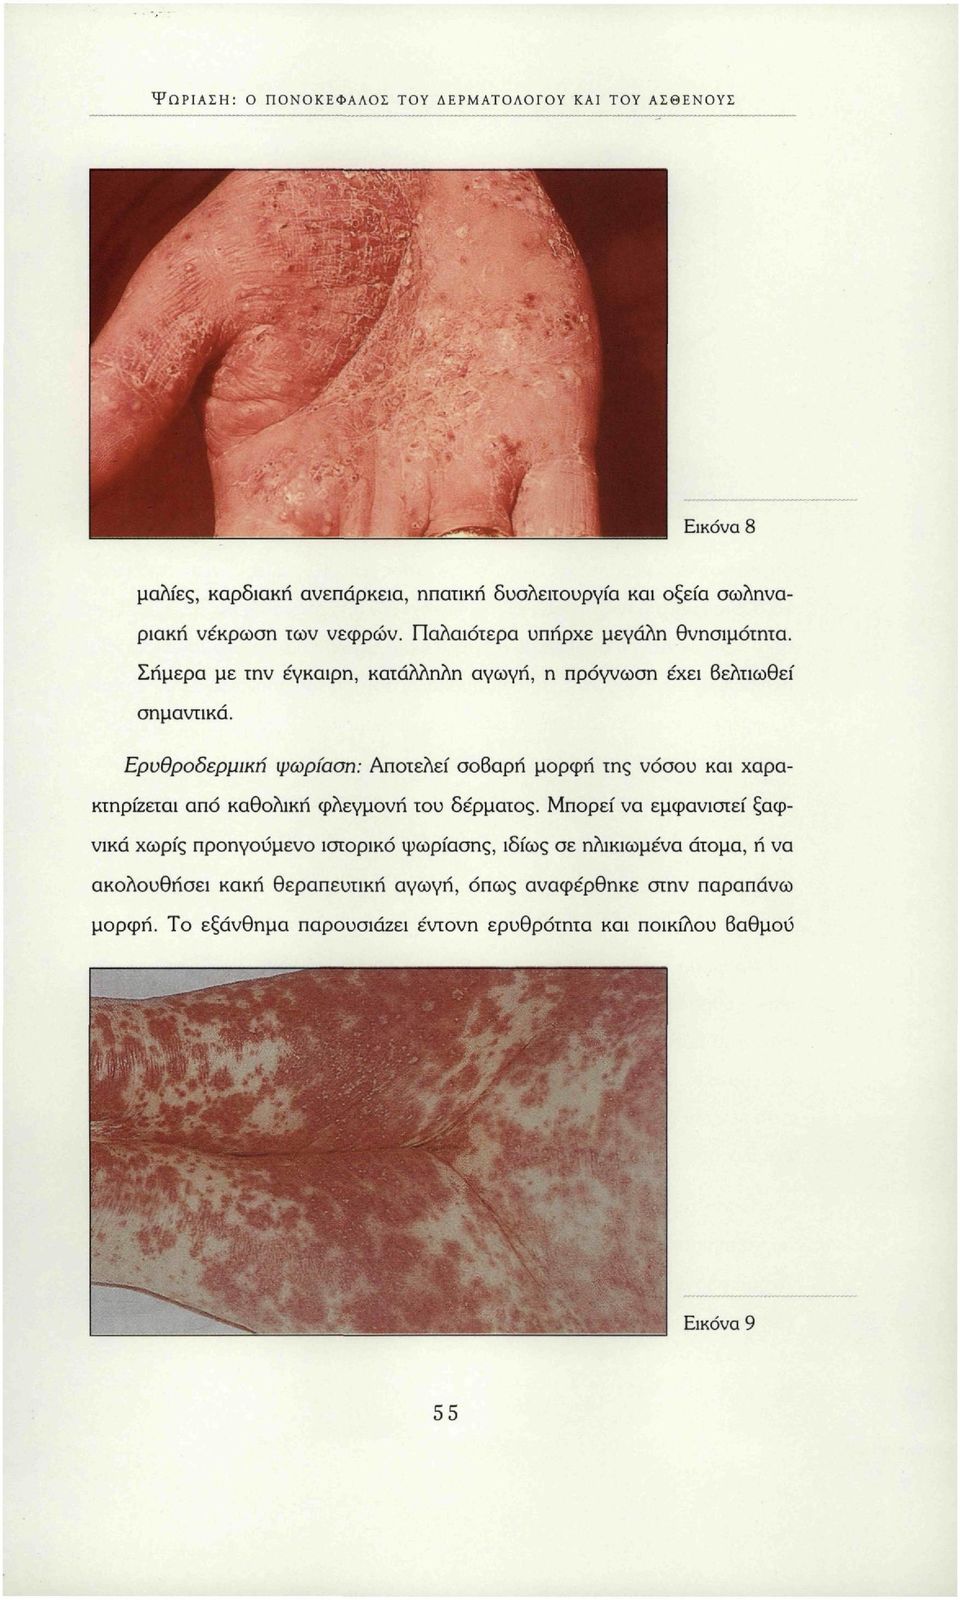 Ερυθροδερμική ψωρίαση: Αποτελεί σοβαρή μορφή της νόσου και χαρακτηρίζεται από καθολική φλεγμονή του δέρματος.